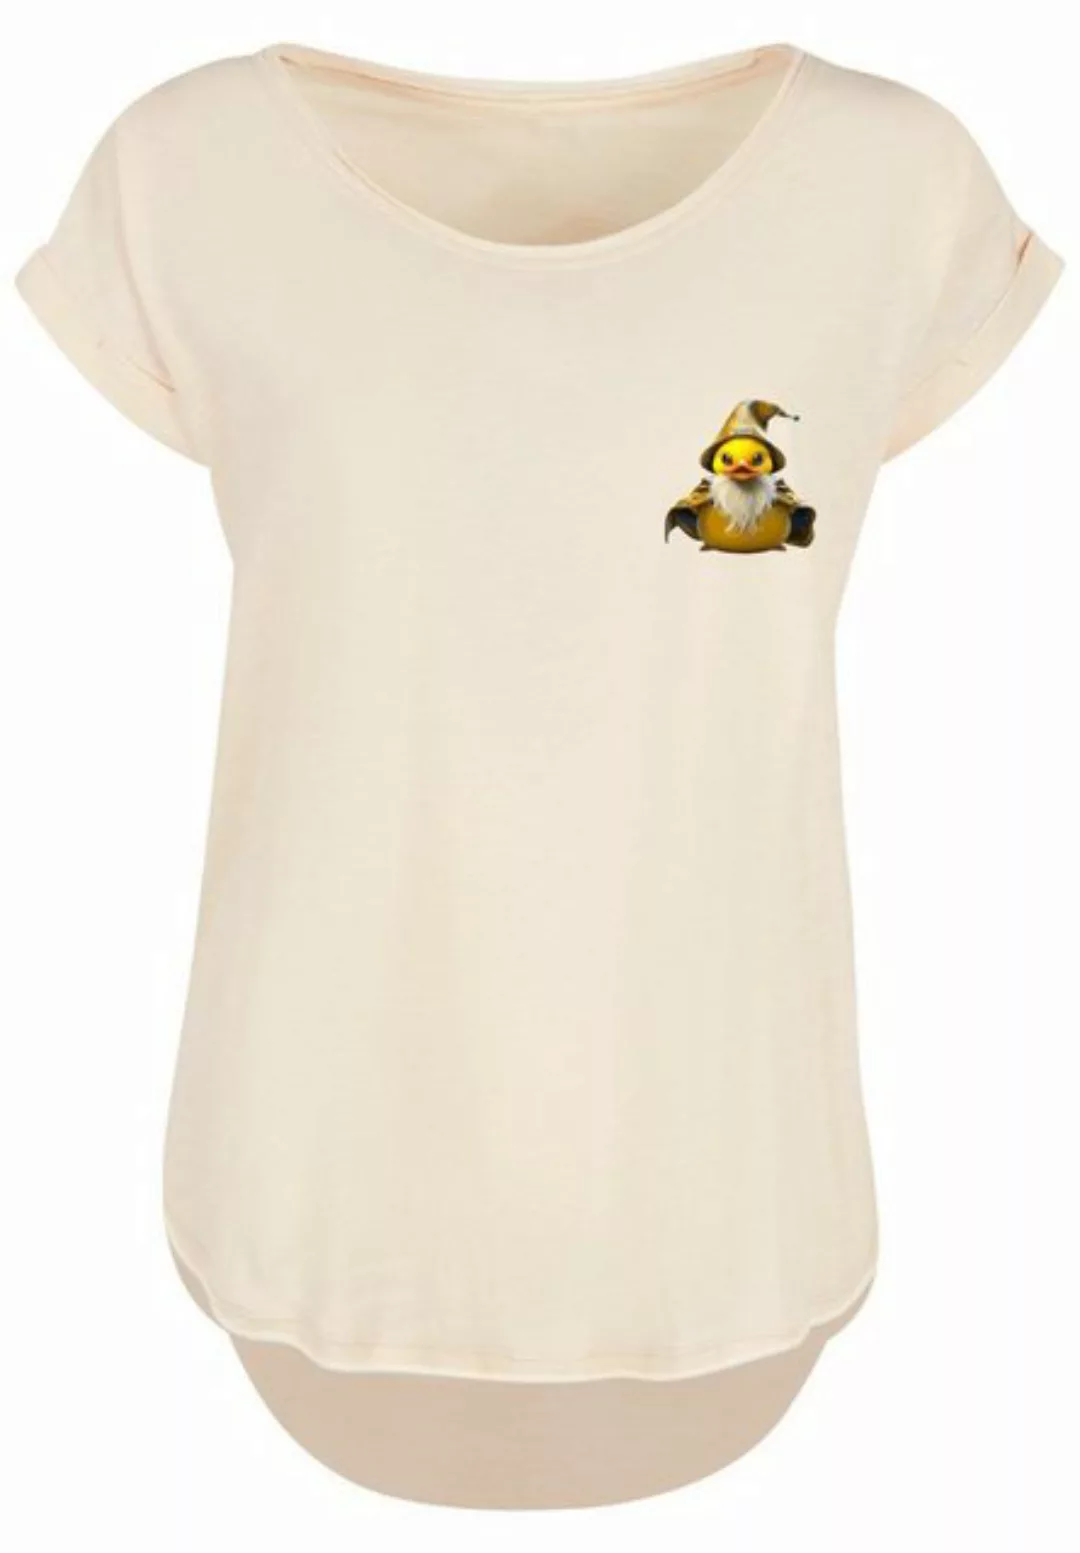 F4NT4STIC T-Shirt Rubber Duck Wizard Long Print günstig online kaufen